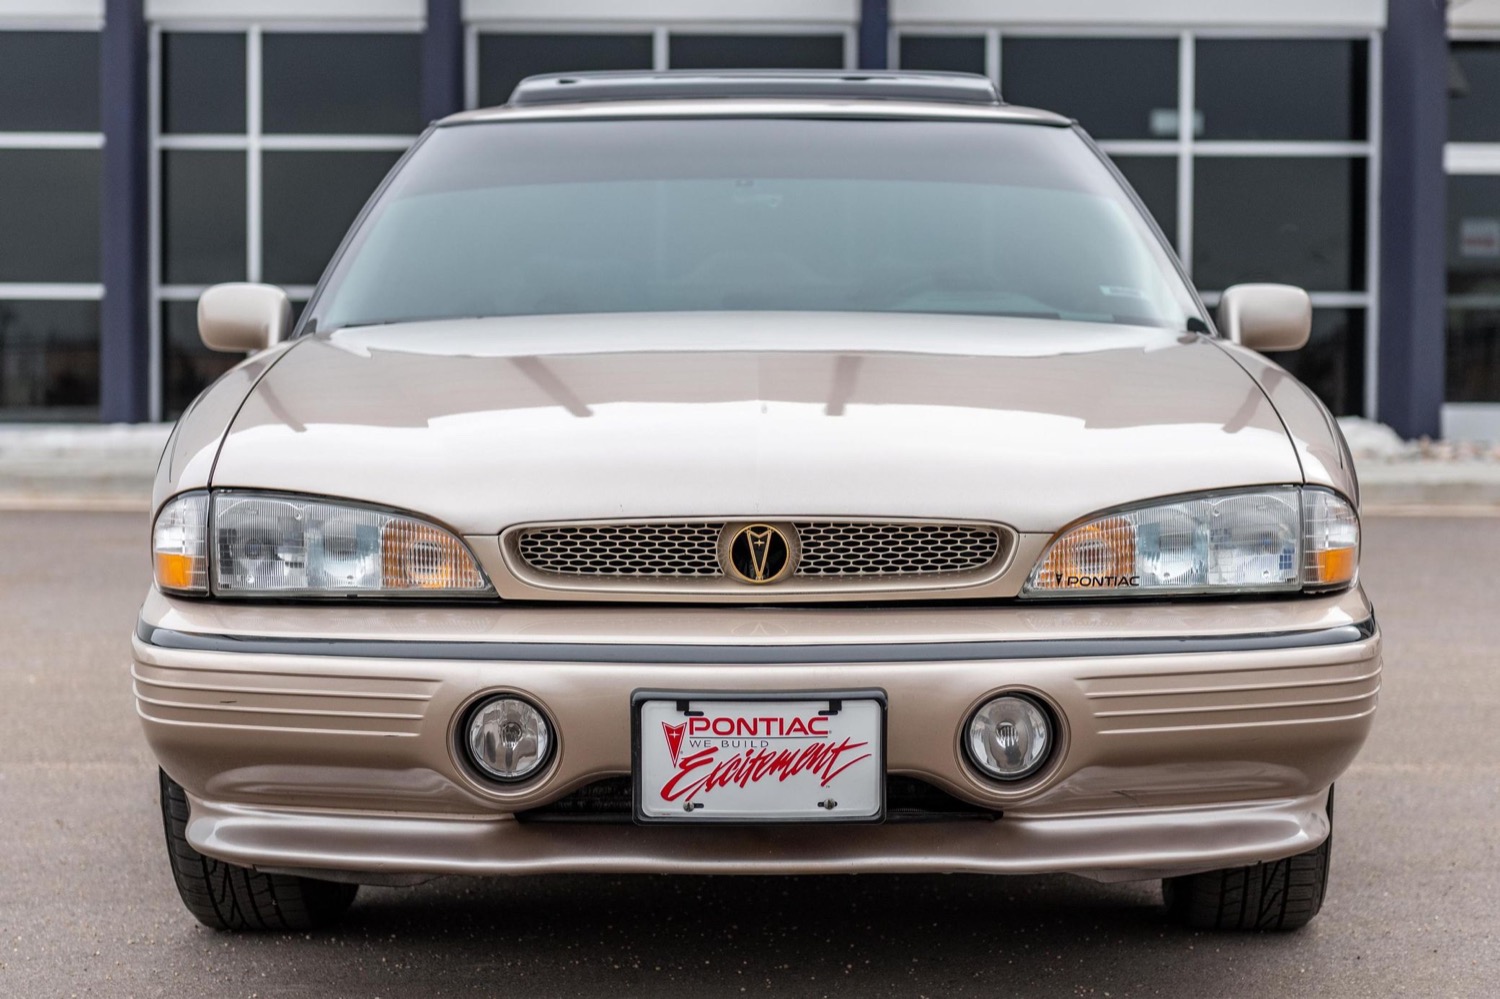 This Clean 1995 Pontiac Bonneville SSEi Is Up For Sale